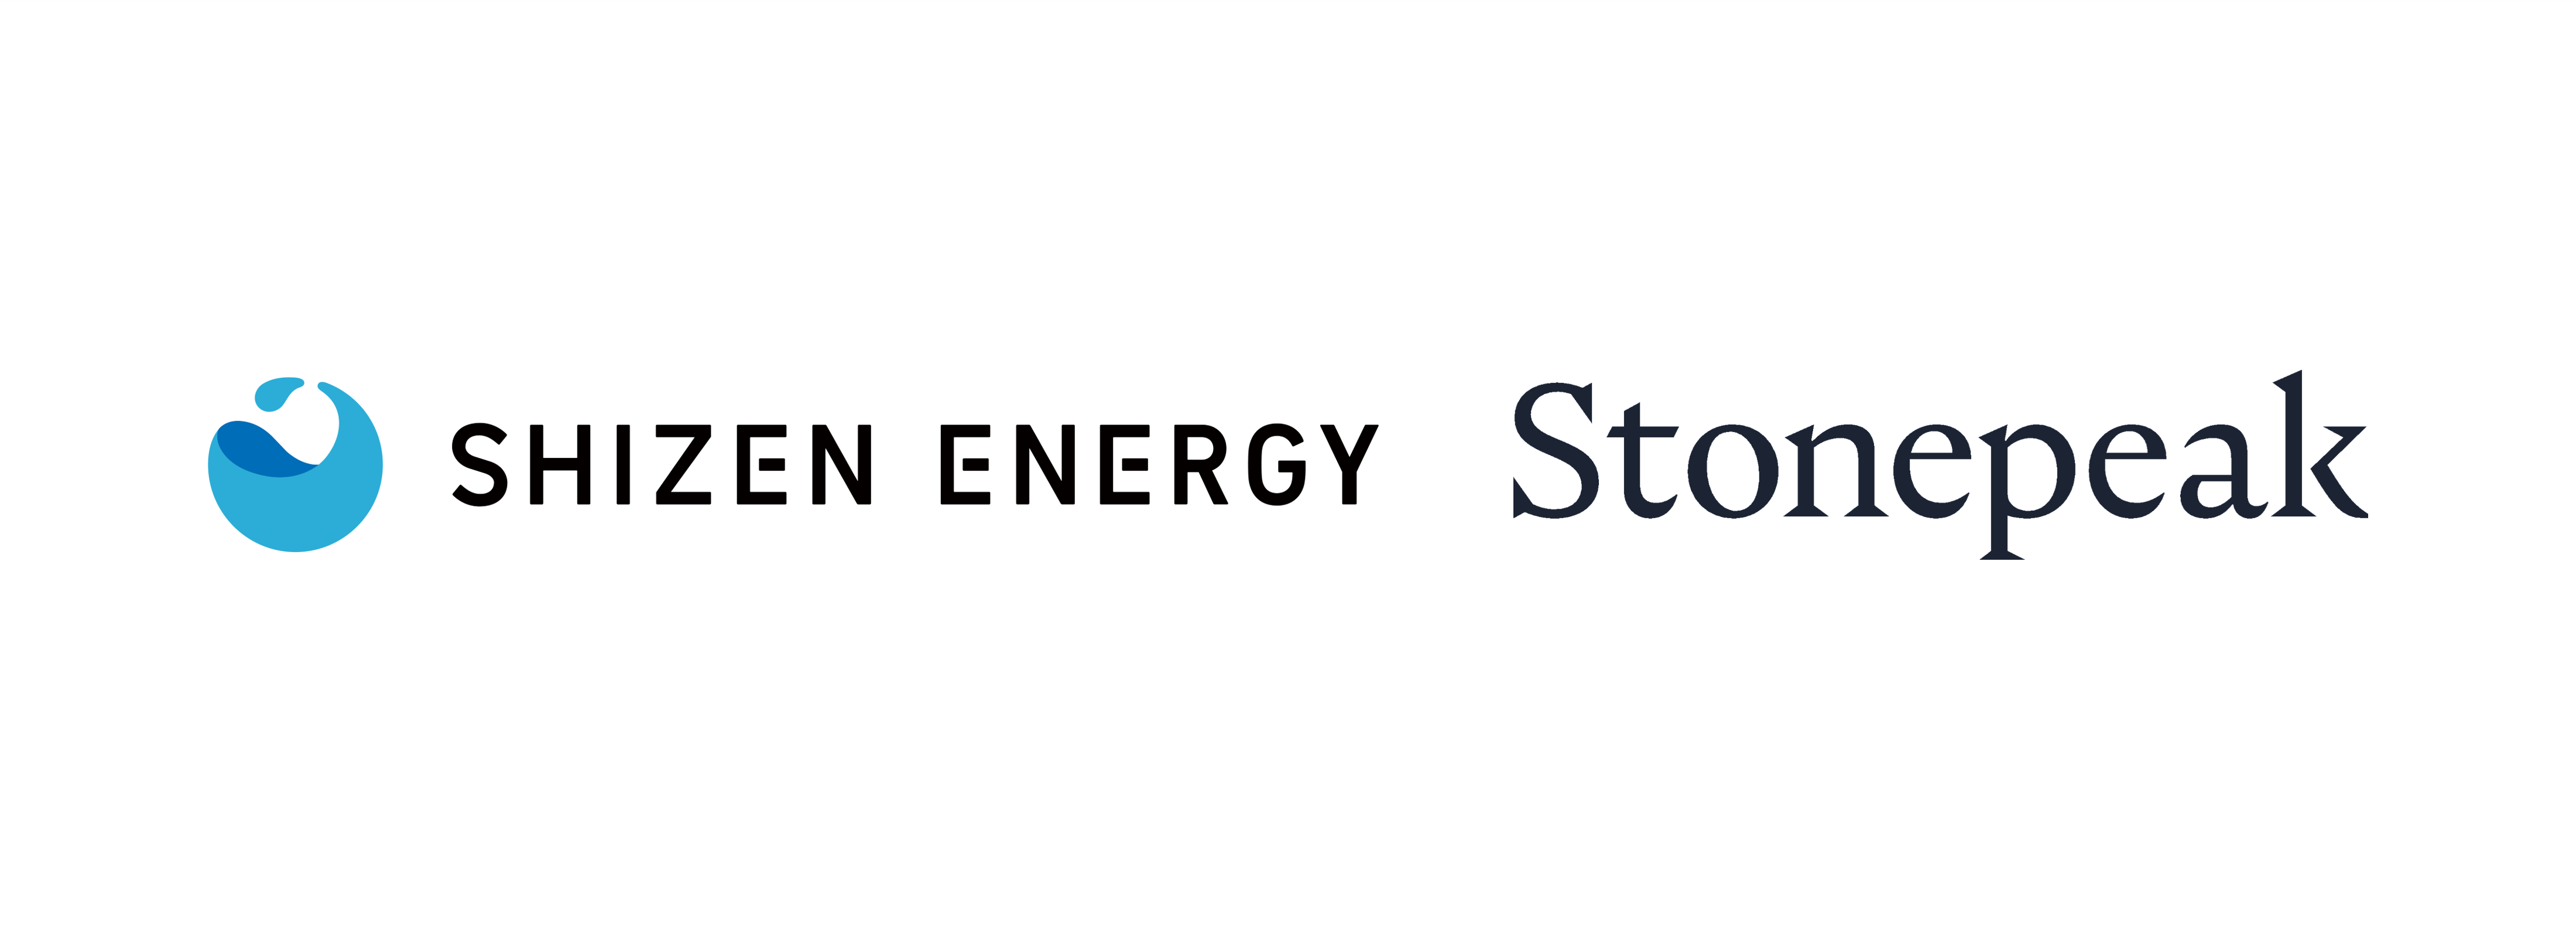 Stonepeakと自然電力、アジア地域で陸上風力発電事業の合弁会社を設立